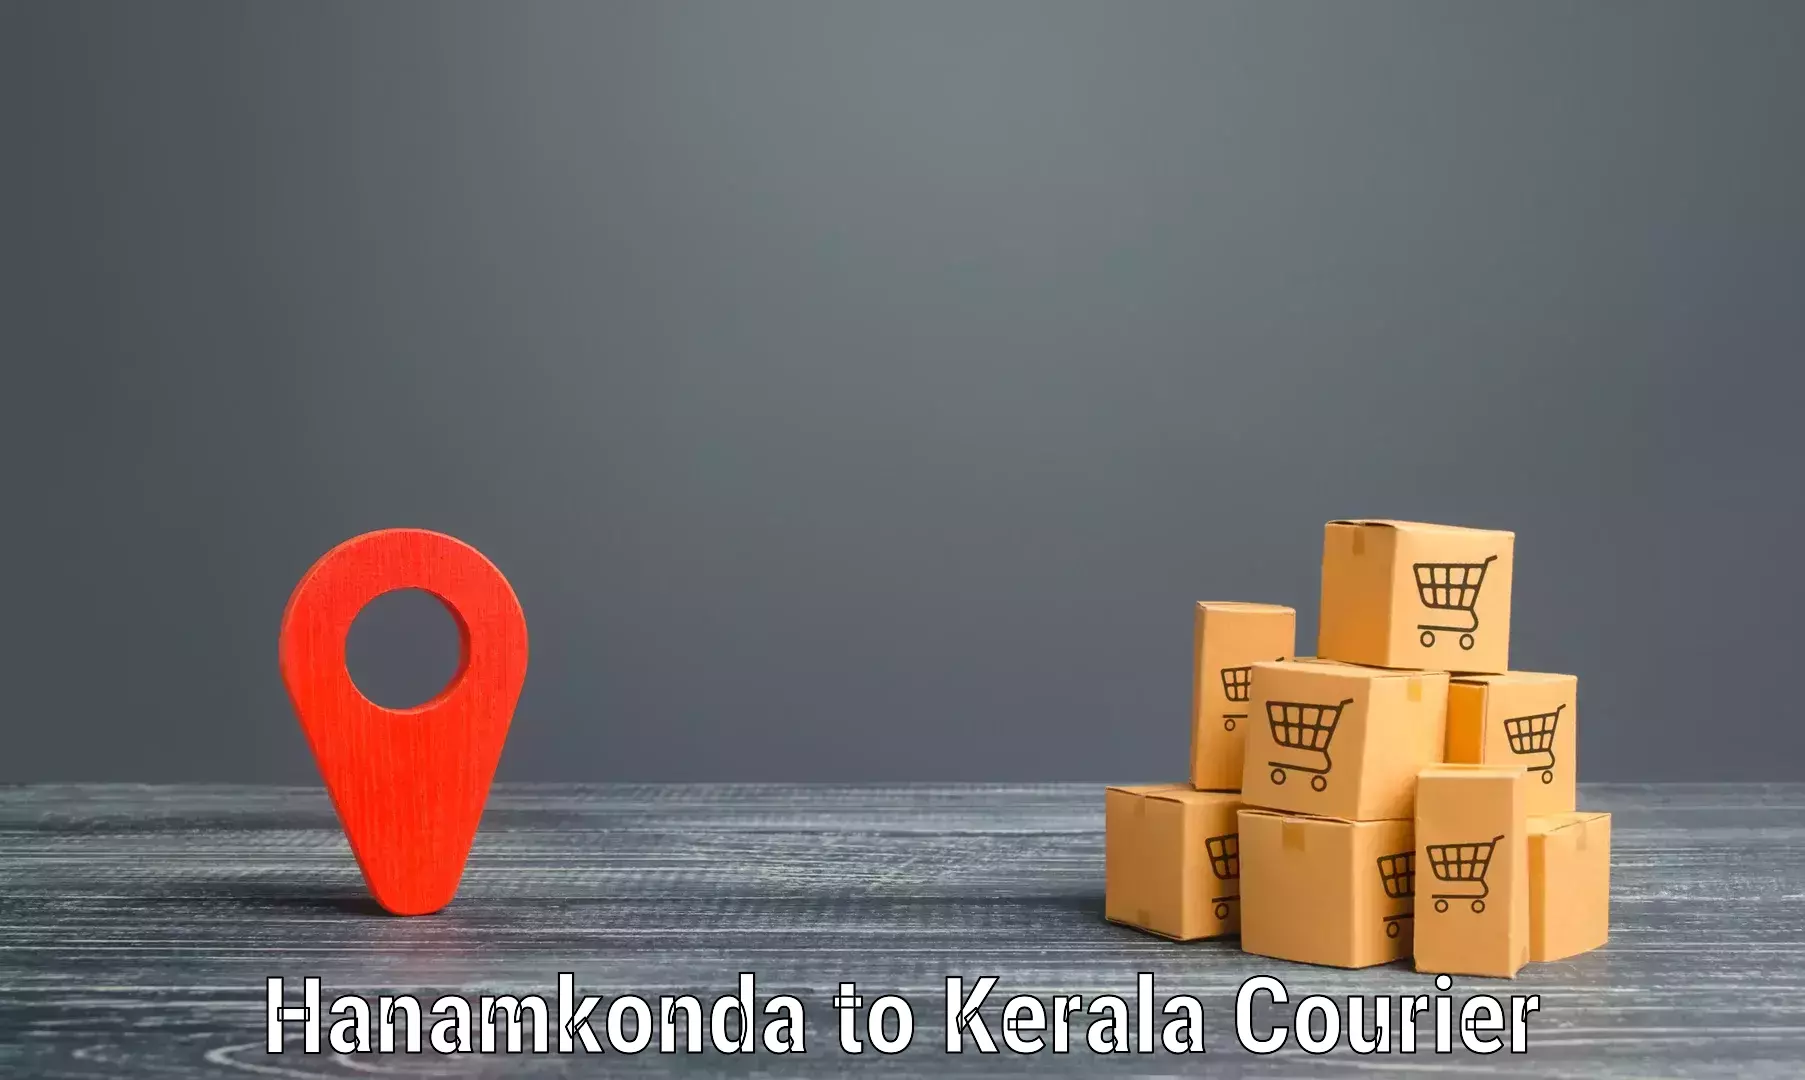 Efficient parcel delivery Hanamkonda to Nenmara